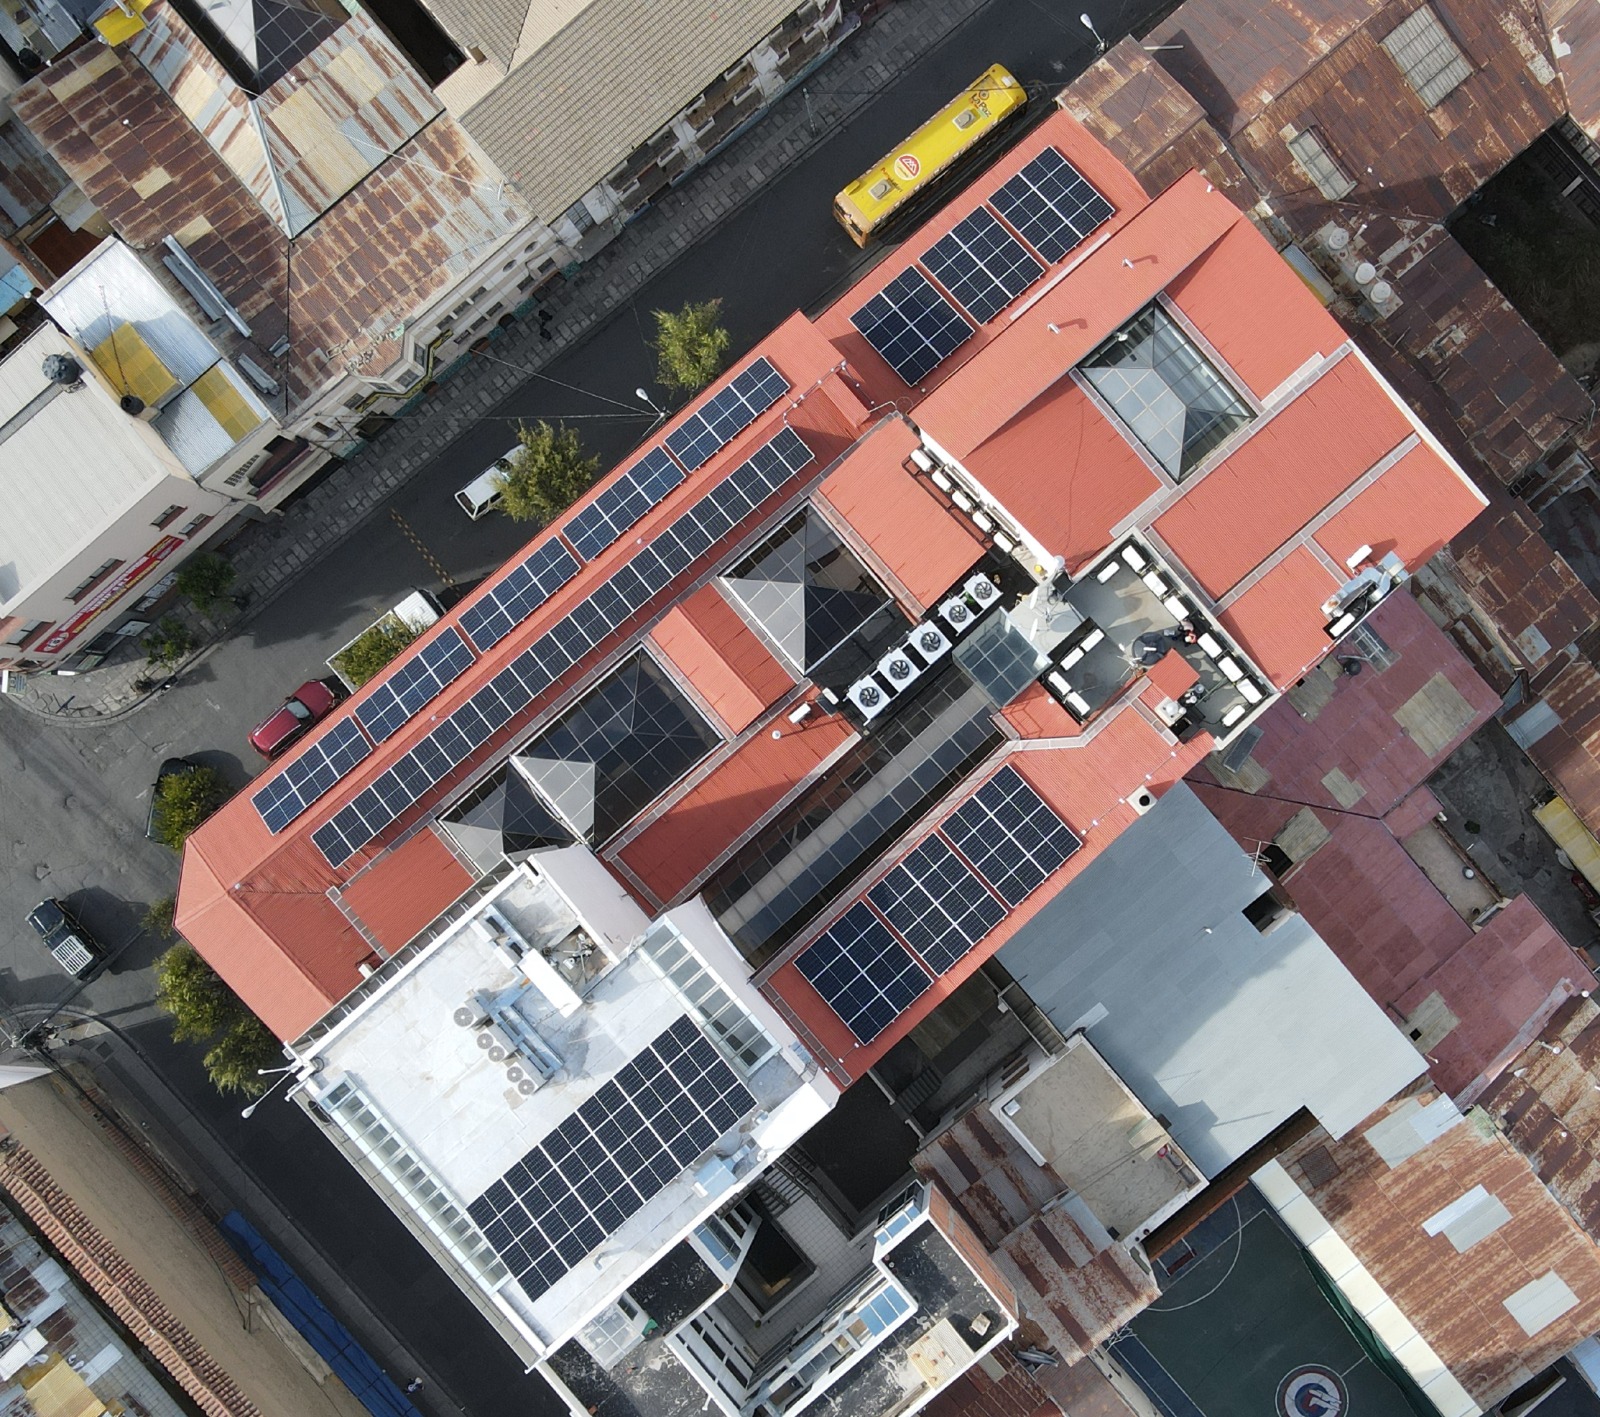 Banco Sol Ilumina el camino: inaugura su primer sistema fotovoltaico en La Paz, marcando el inicio de su ruta hacia la transición energética